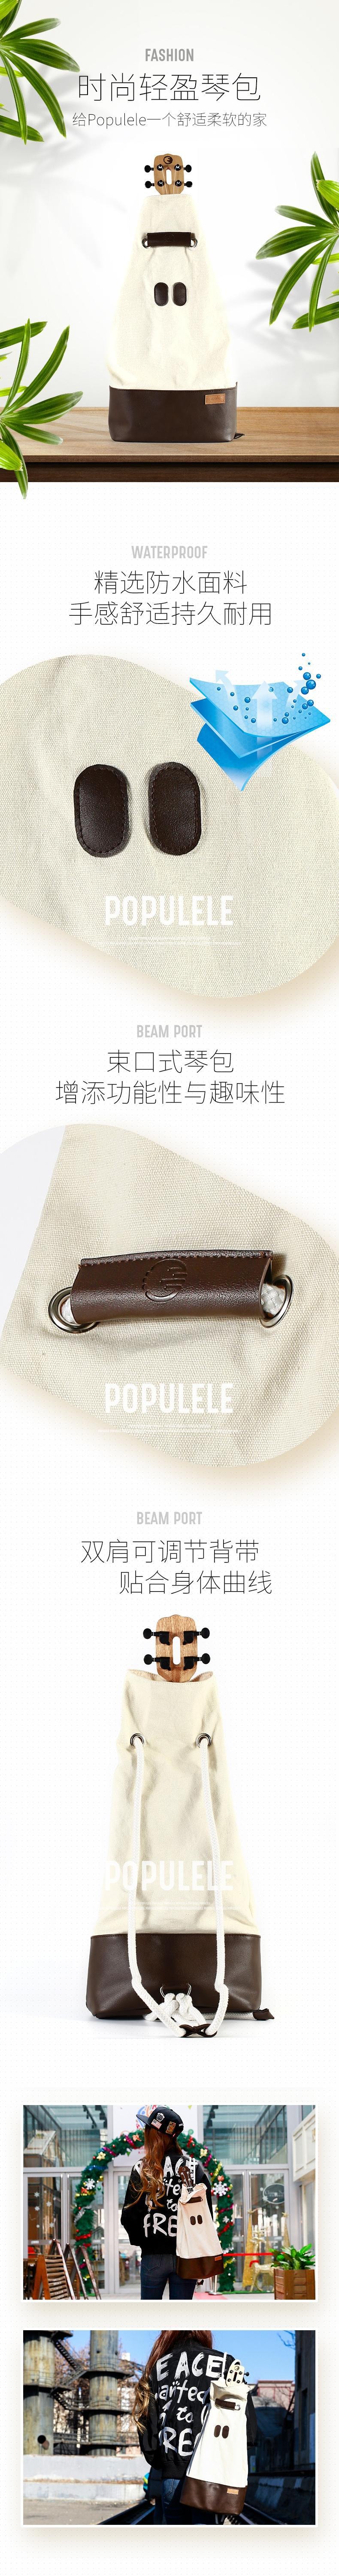 Populele2尤克里裡23吋原廠背包 白色【加拿大直效郵件】